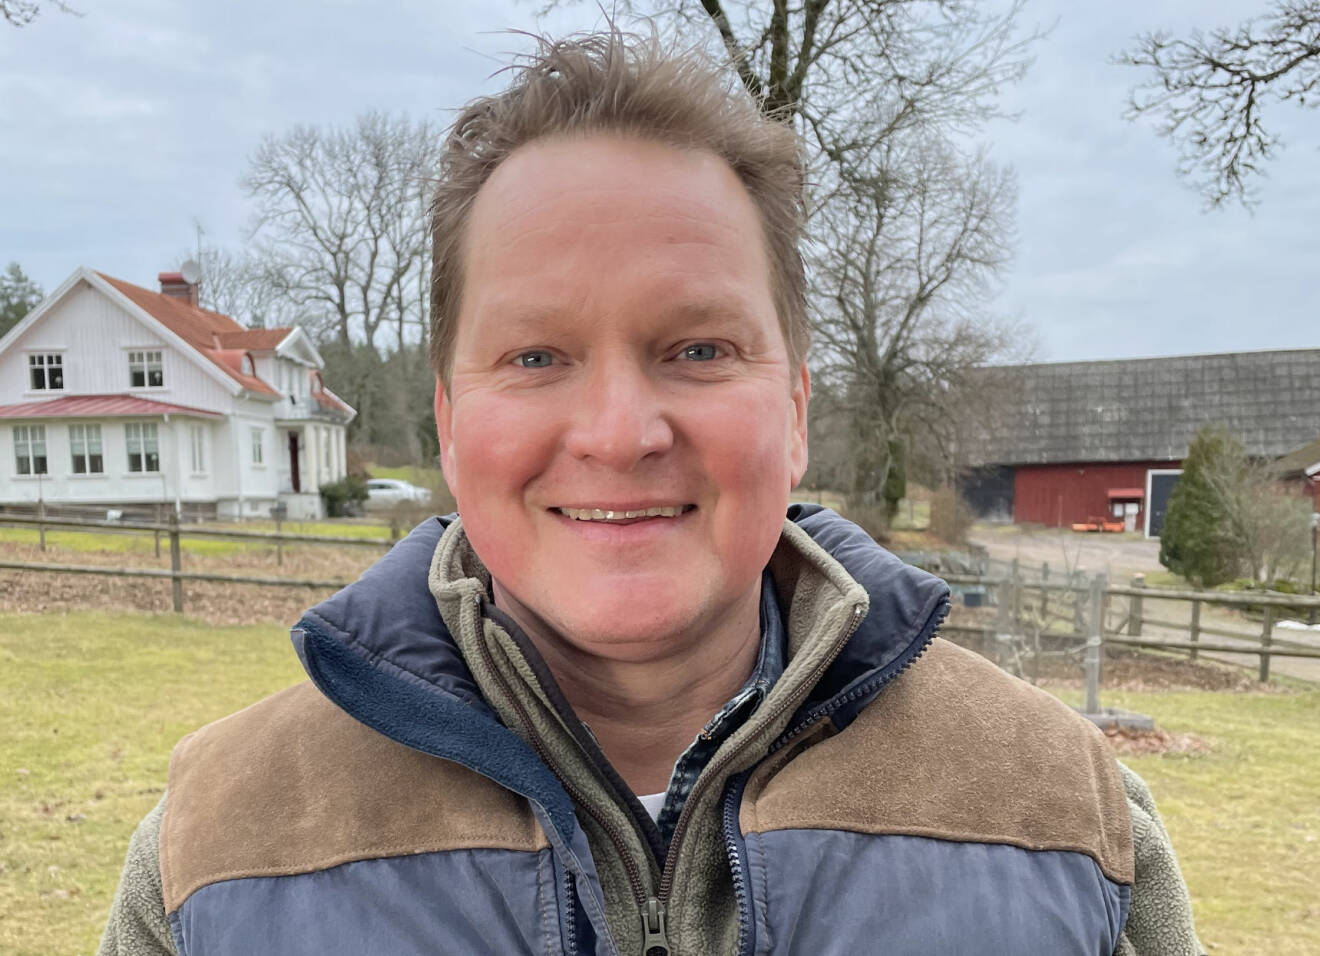 Vallbonden Carl Calle Larsson som är en av deltagarna i Bonde söker fru 2021.